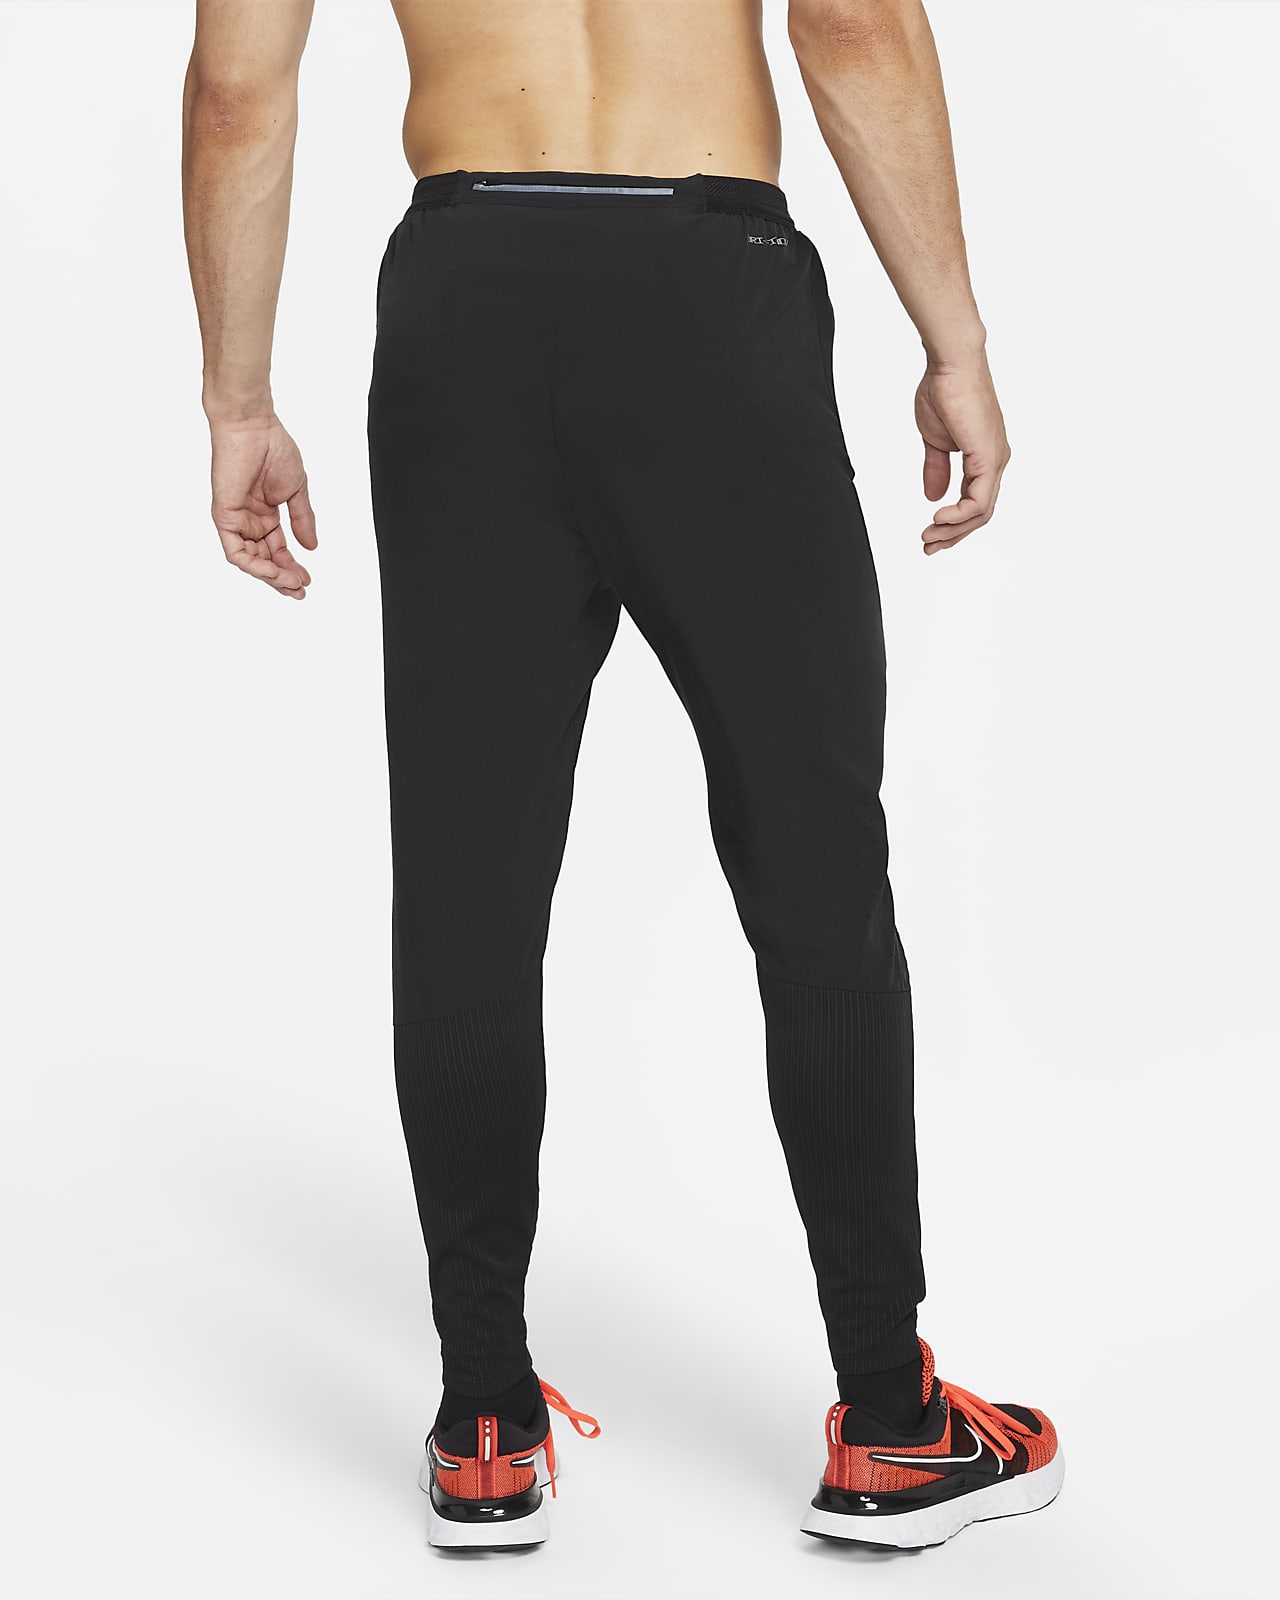 Nike Men's Hyper Dri-FIT Yoga Pants